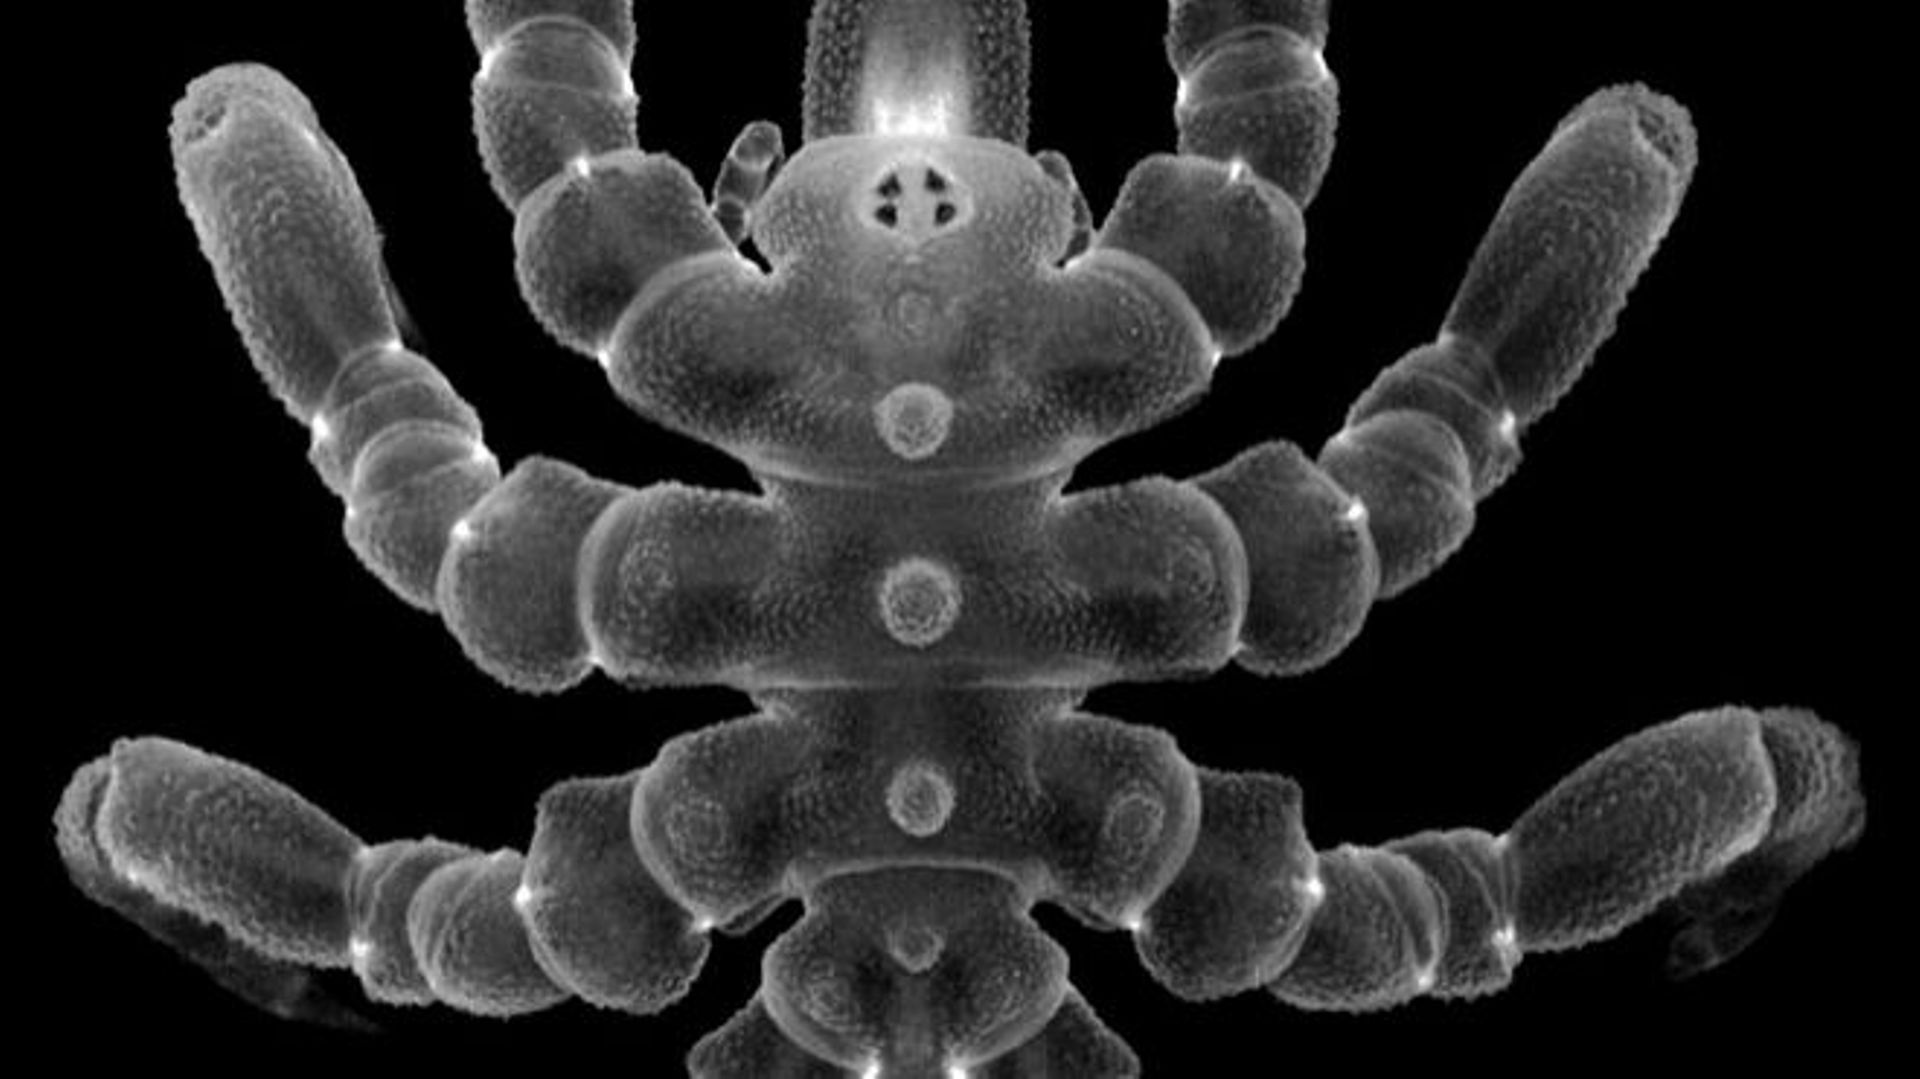 Les pycnogonides, une espèce marine apparentée aux araignées, peuvent faire repousser des parties du corps après amputation, et pas seulement de simples membres, selon une étude